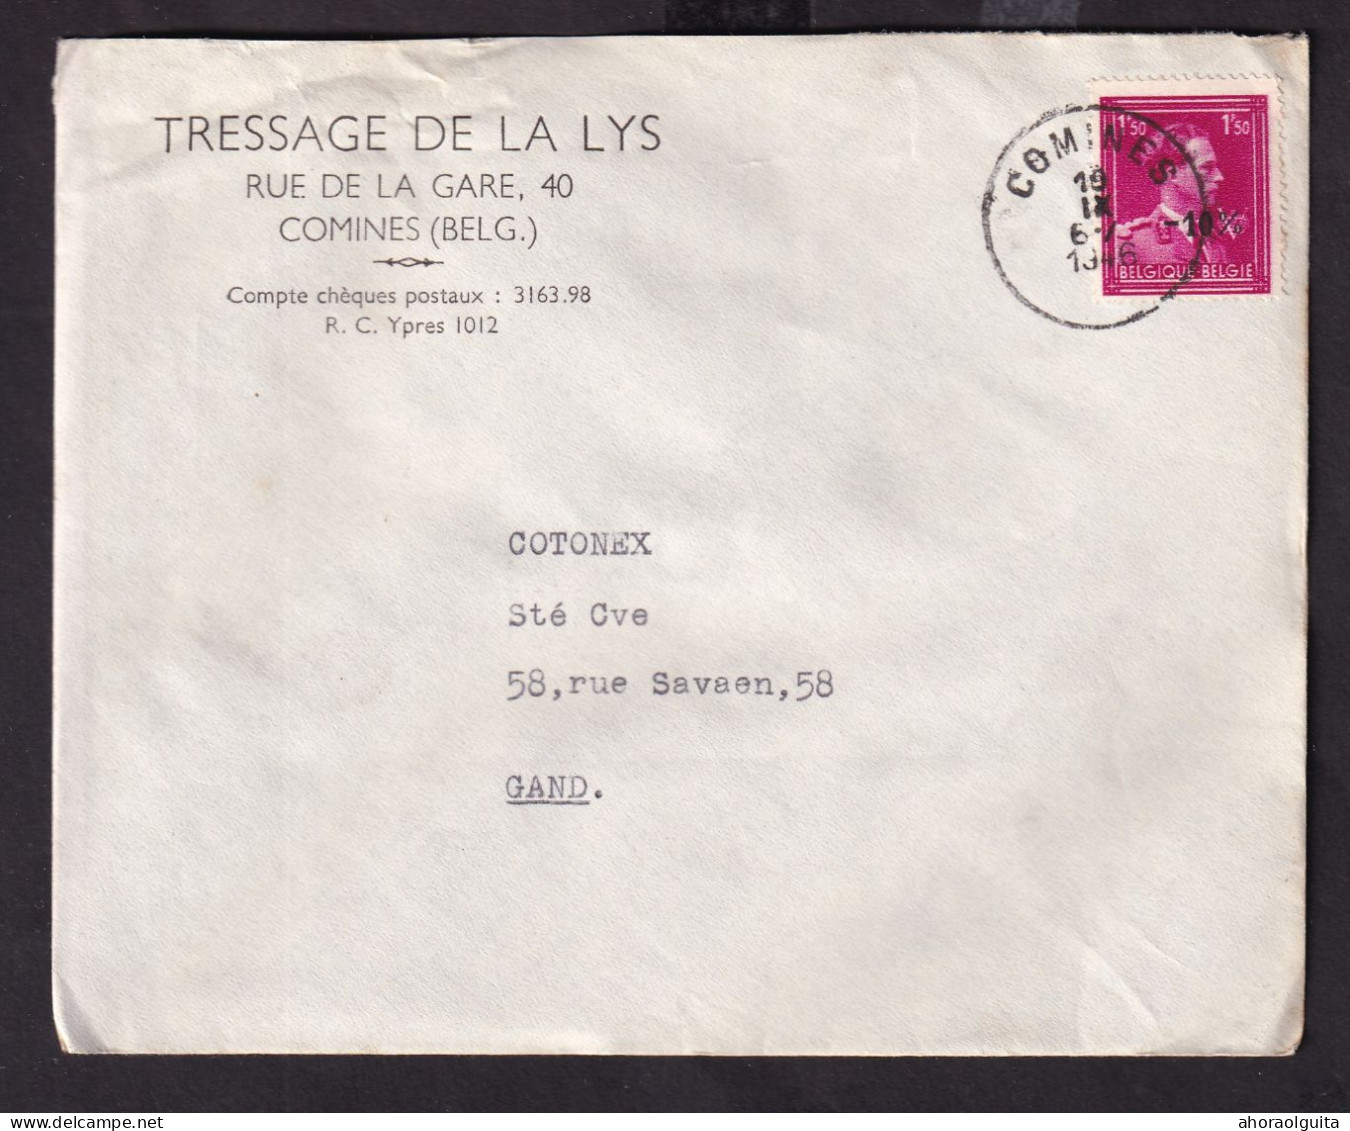 DDEE 810 -- Enveloppe TP Moins 10 % Surcharge Locale COMINES 1946 - Entete Tissage De La Lys - 1946 -10%